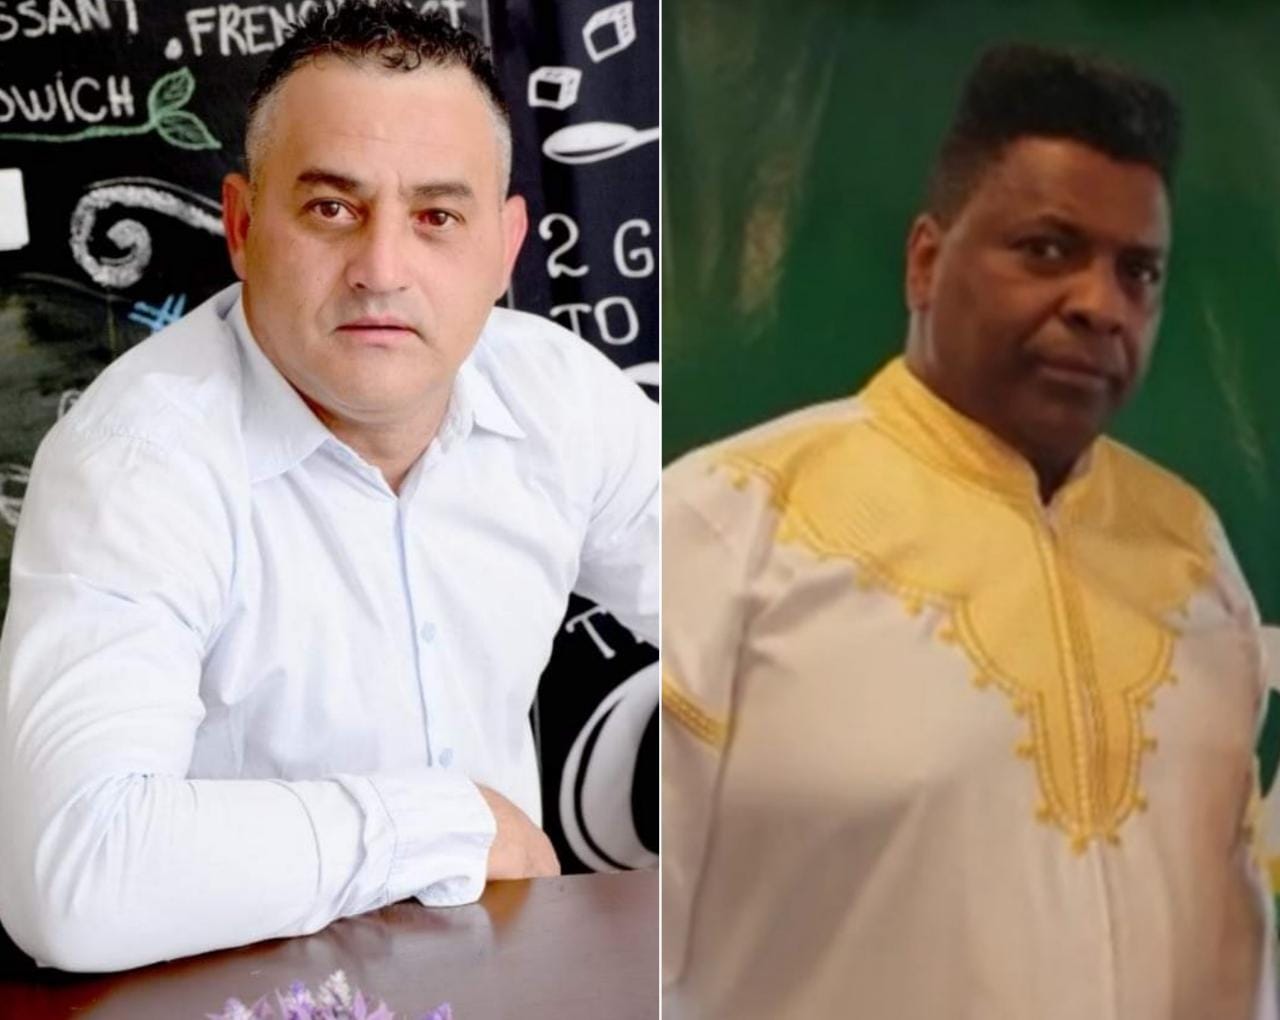 Dois candidatos de Carambeí tentam cadeira na ALEP